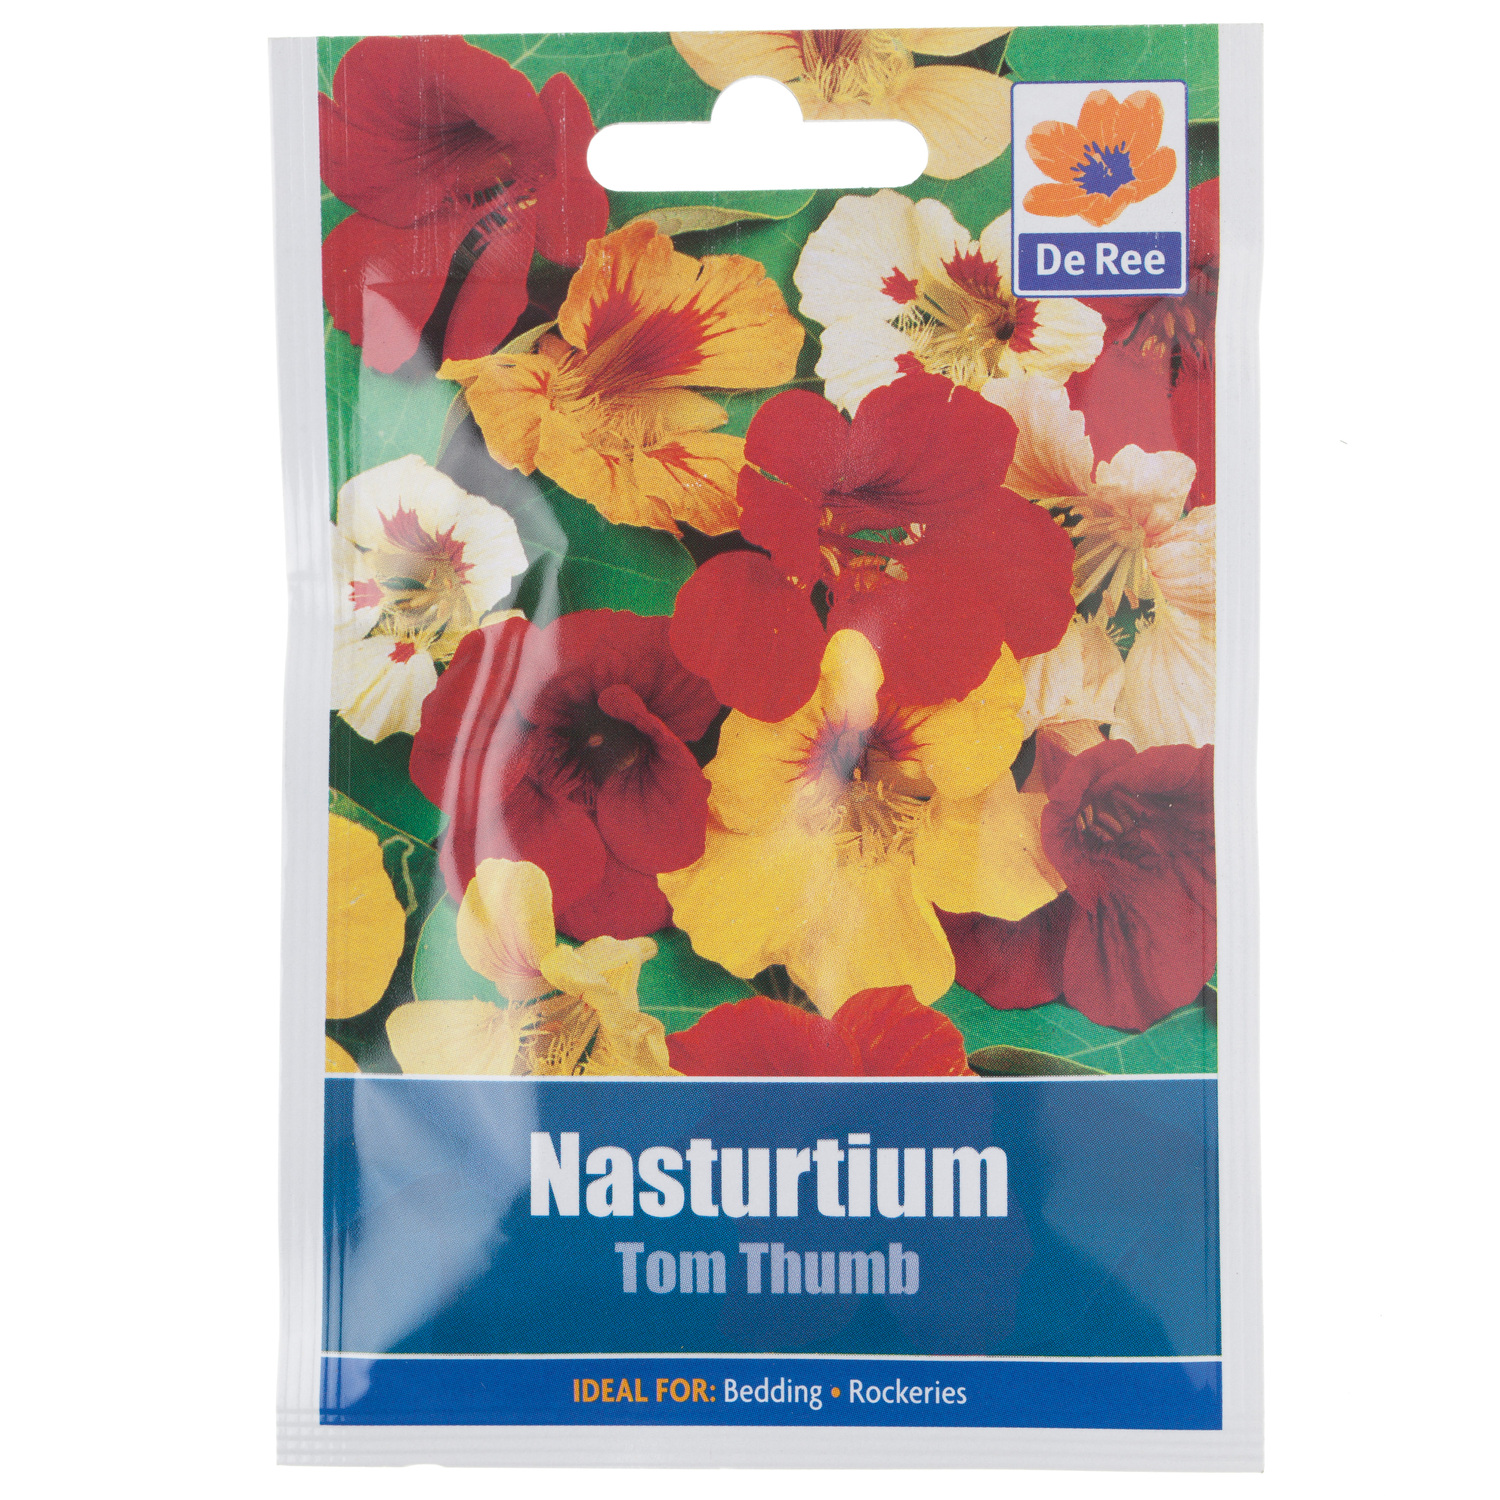 Nasturtium Tom Thumb Seed Packet Image